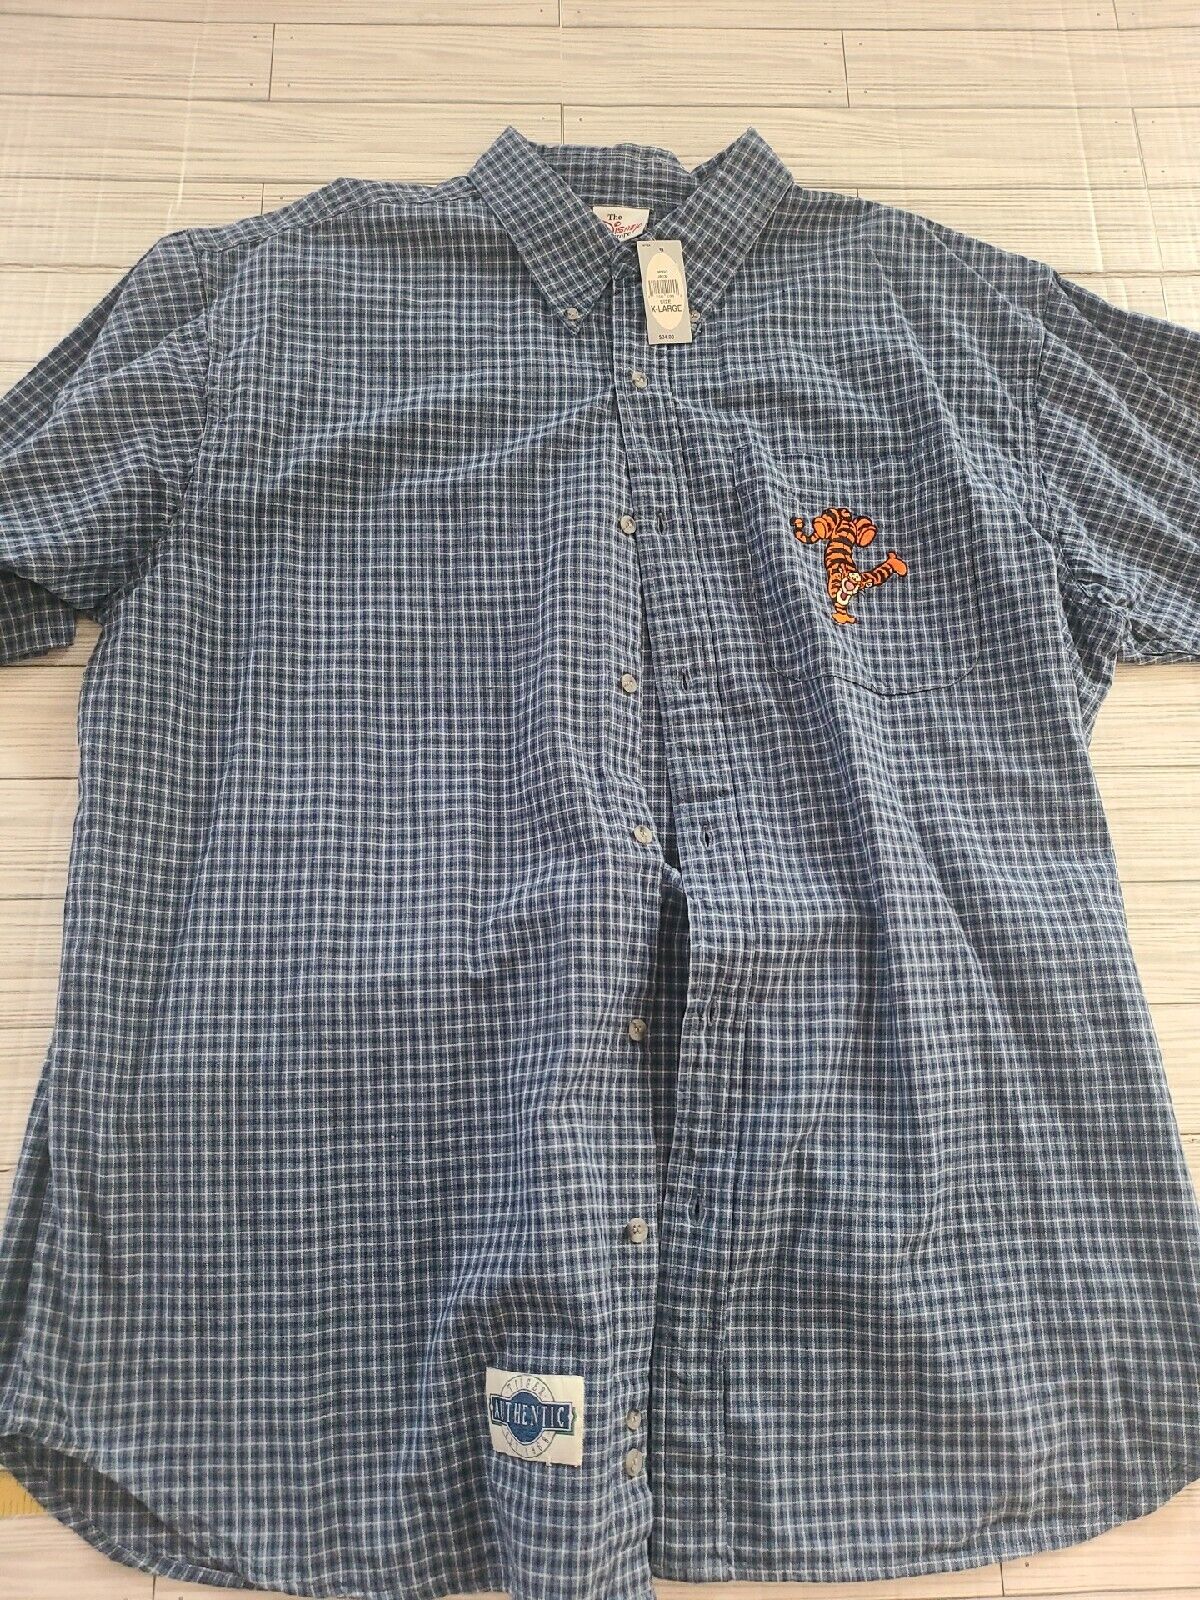 NWT Disney Store Rare Vintage  Tigger Button Up XL Shirt 100% Cotton 